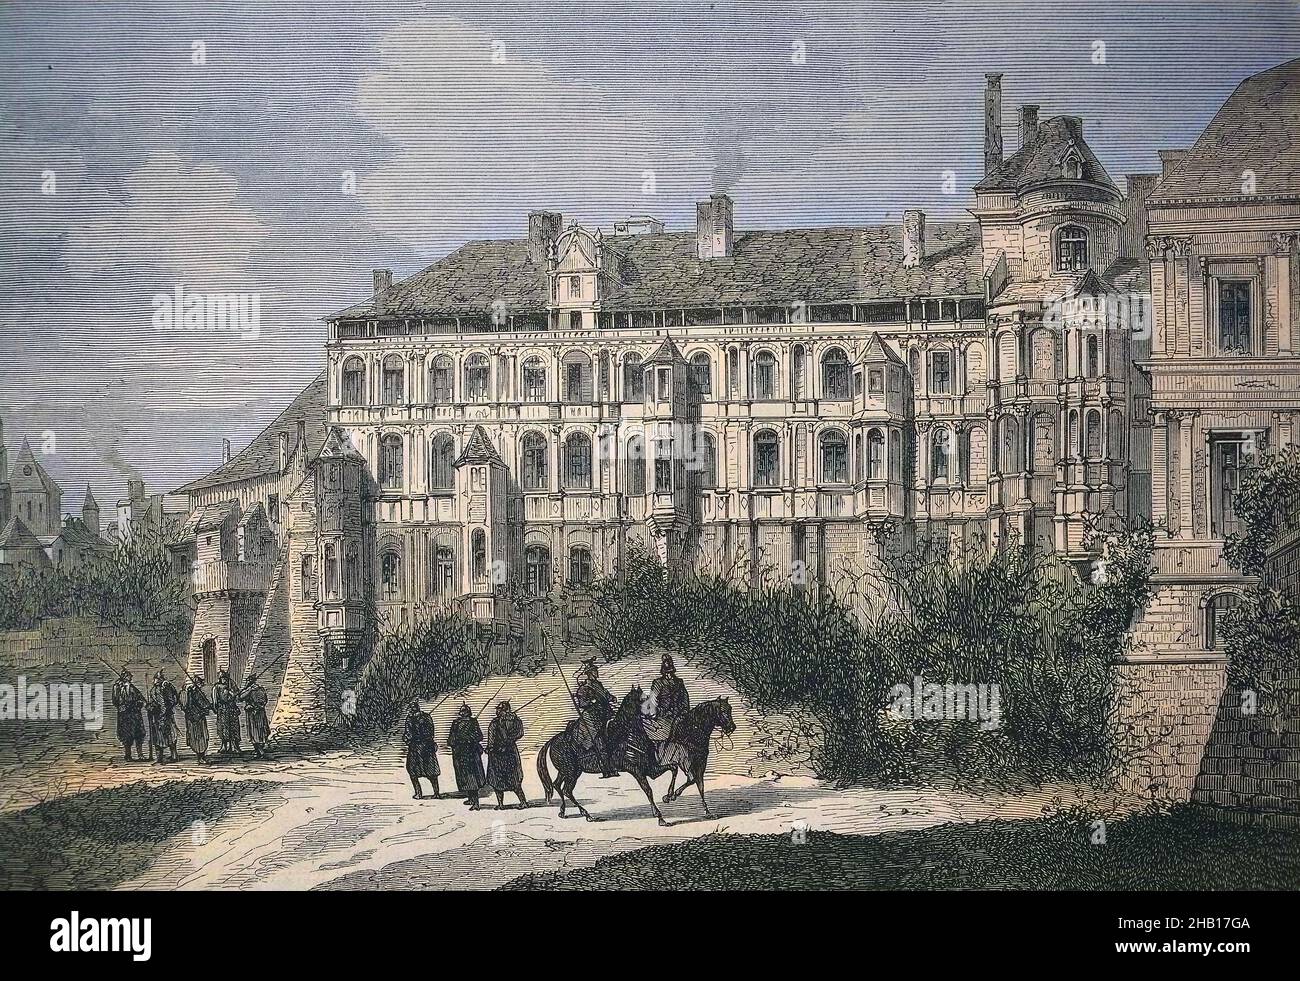 Le Château Royal de Blois est situé dans le département du Loir-et-cher  dans la vallée de la Loire, en France / Das königliche Schloss von Blois  liegt im Departement Loir-et-cher im Loire-Tal